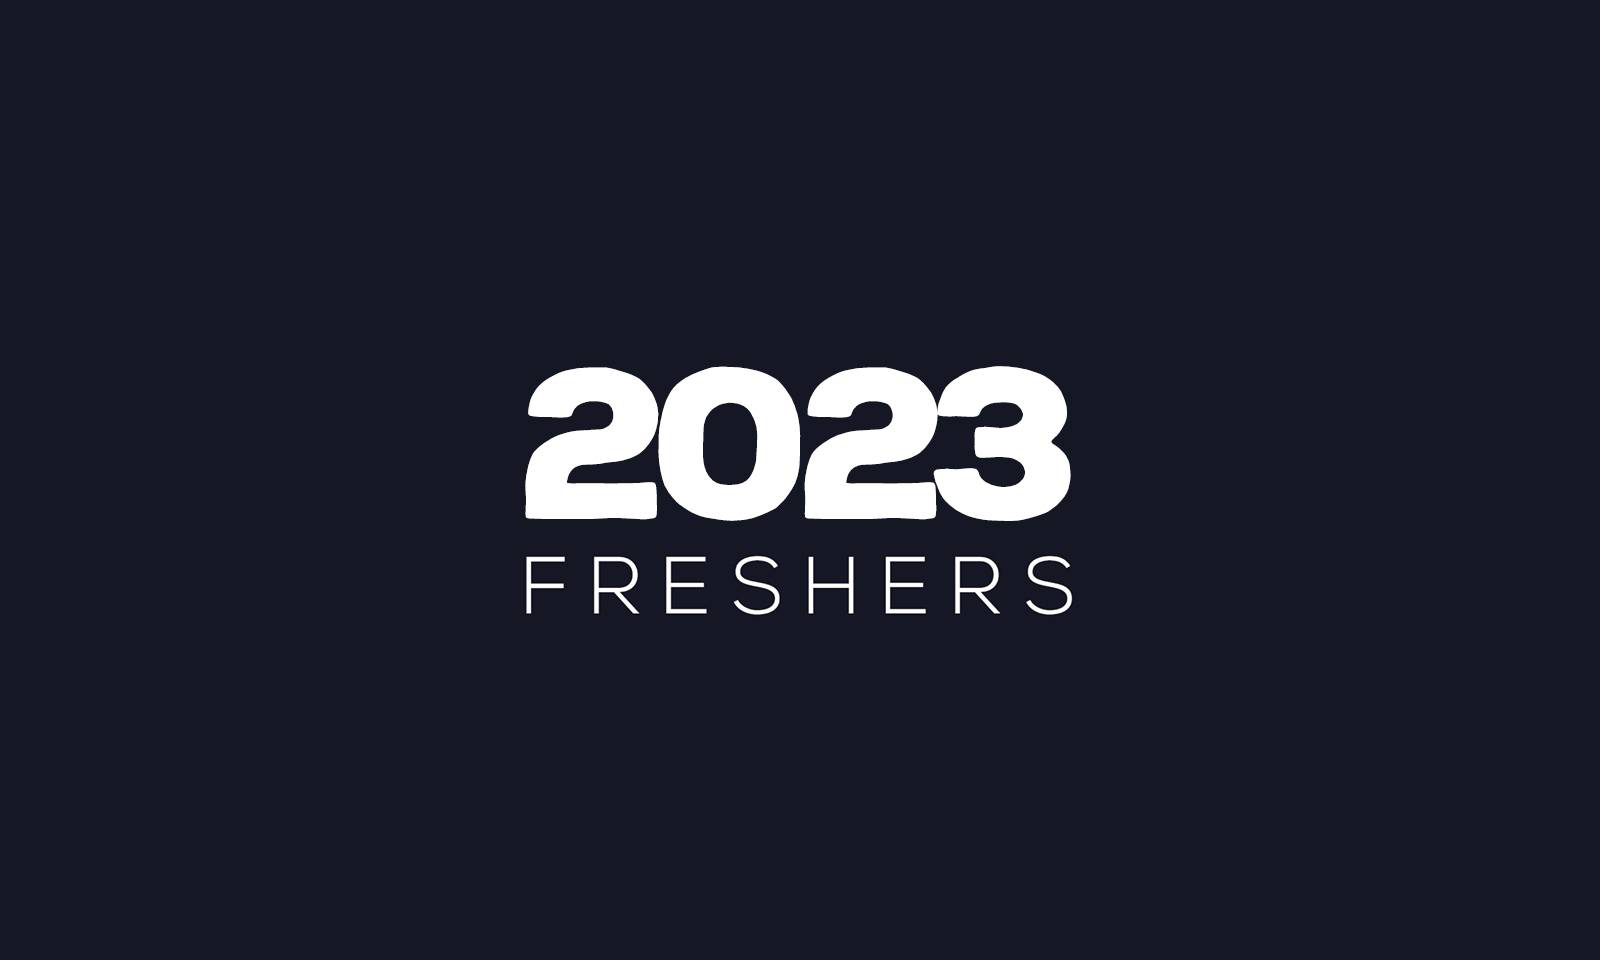 Freshers 2023 logo